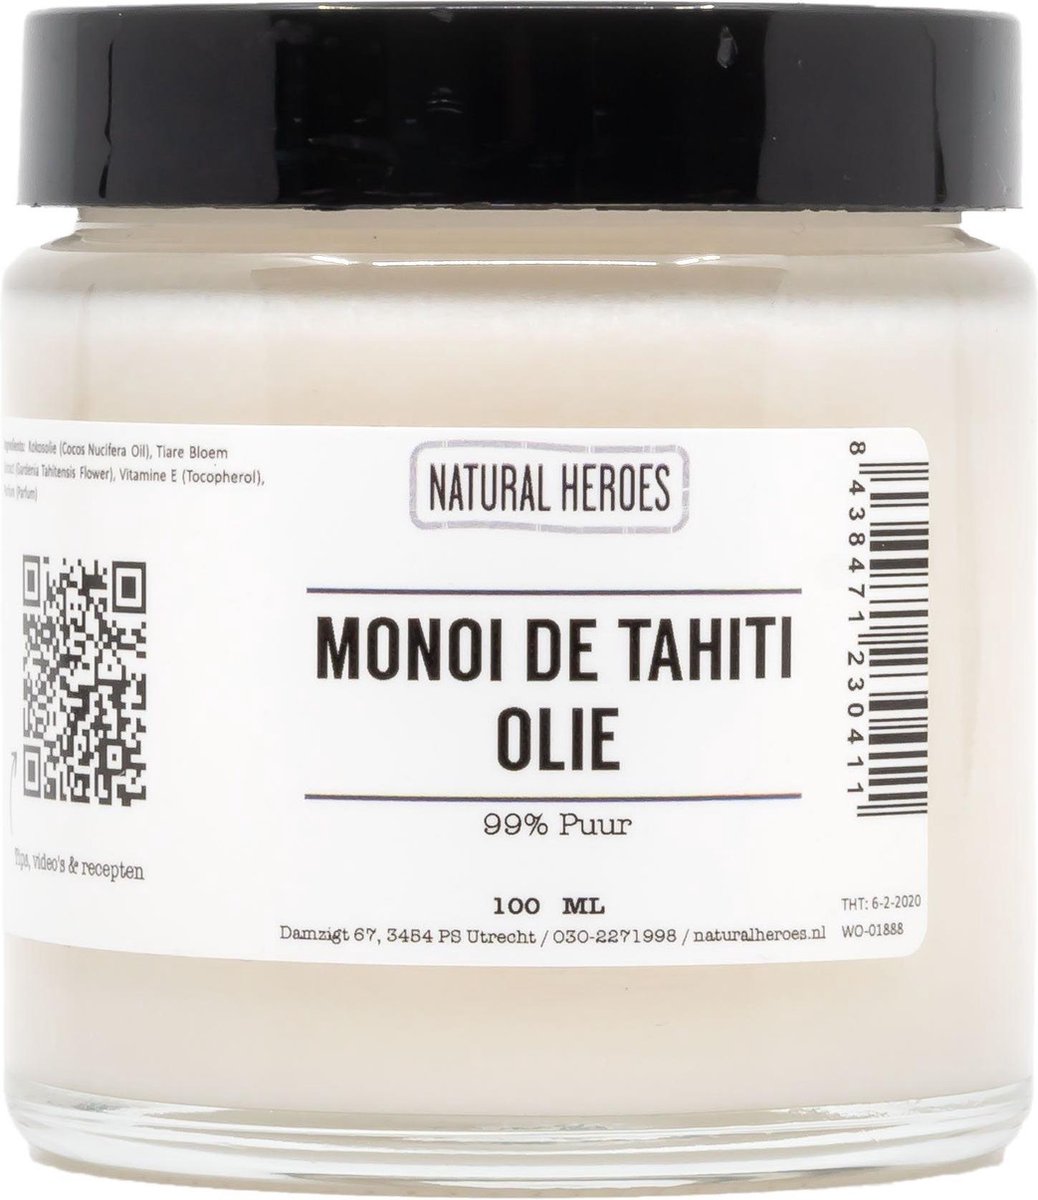 Monoï de Tahiti Olie (99% puur) 100 ml